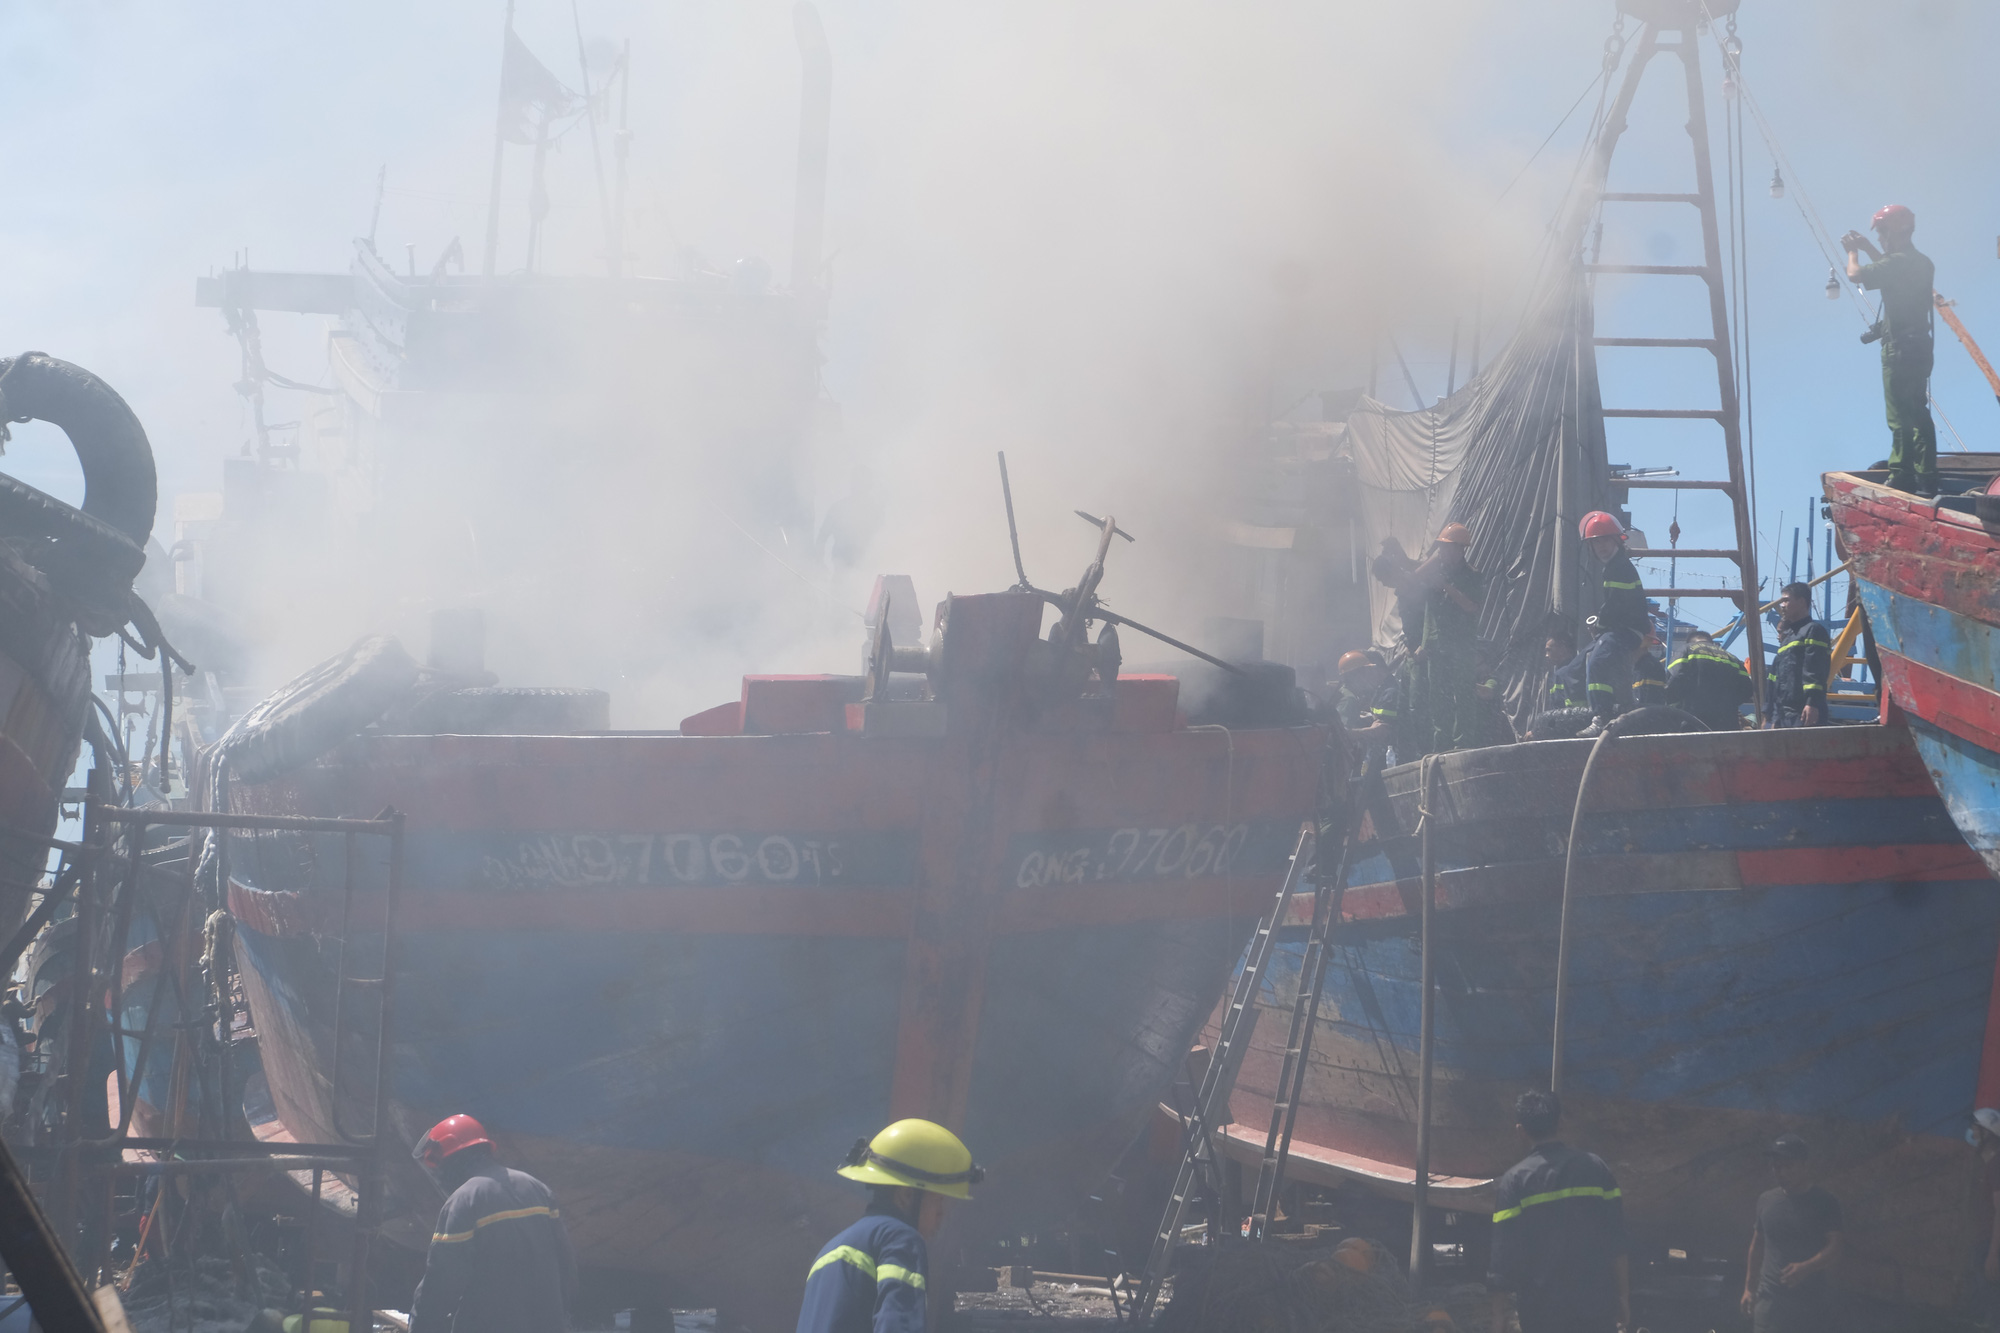 Tàu cá tiền tỷ bốc cháy ngùn ngụt giữa xưởng sửa chữa ở Đà Nẵng - Ảnh 1.